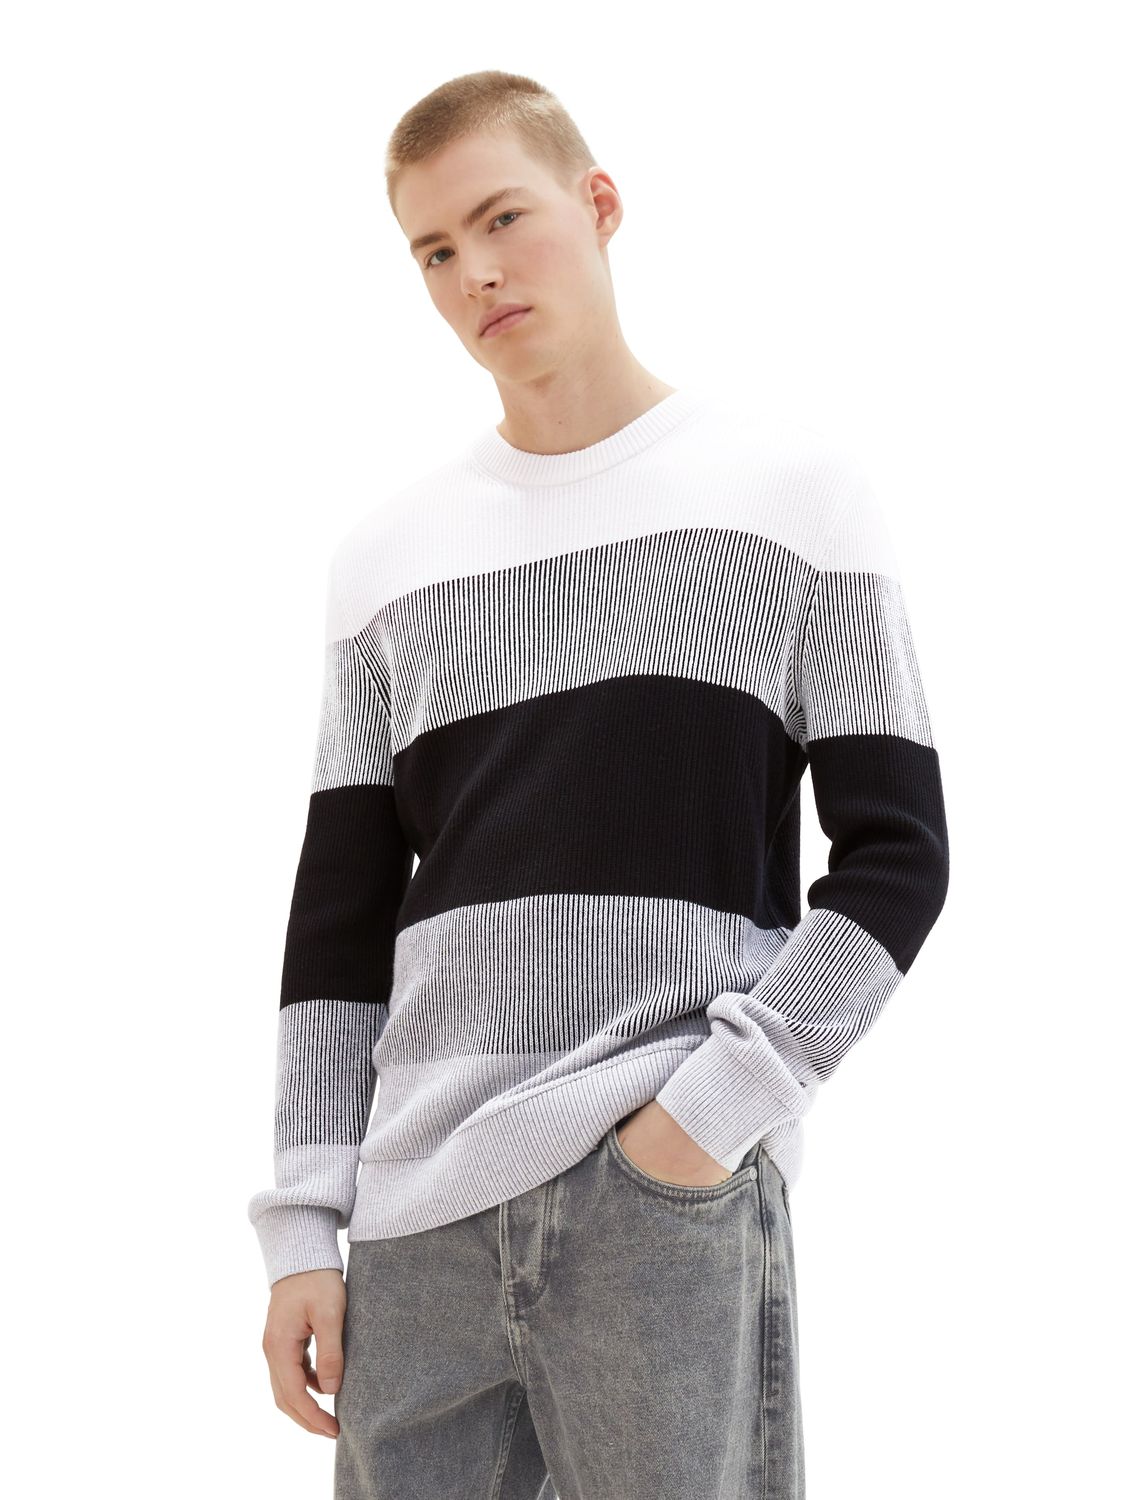 Пуловер TOM TAILOR Denim STRUCTURED COLORBLOCK, разноцветный пуловер tom tailor denim structured basic серый